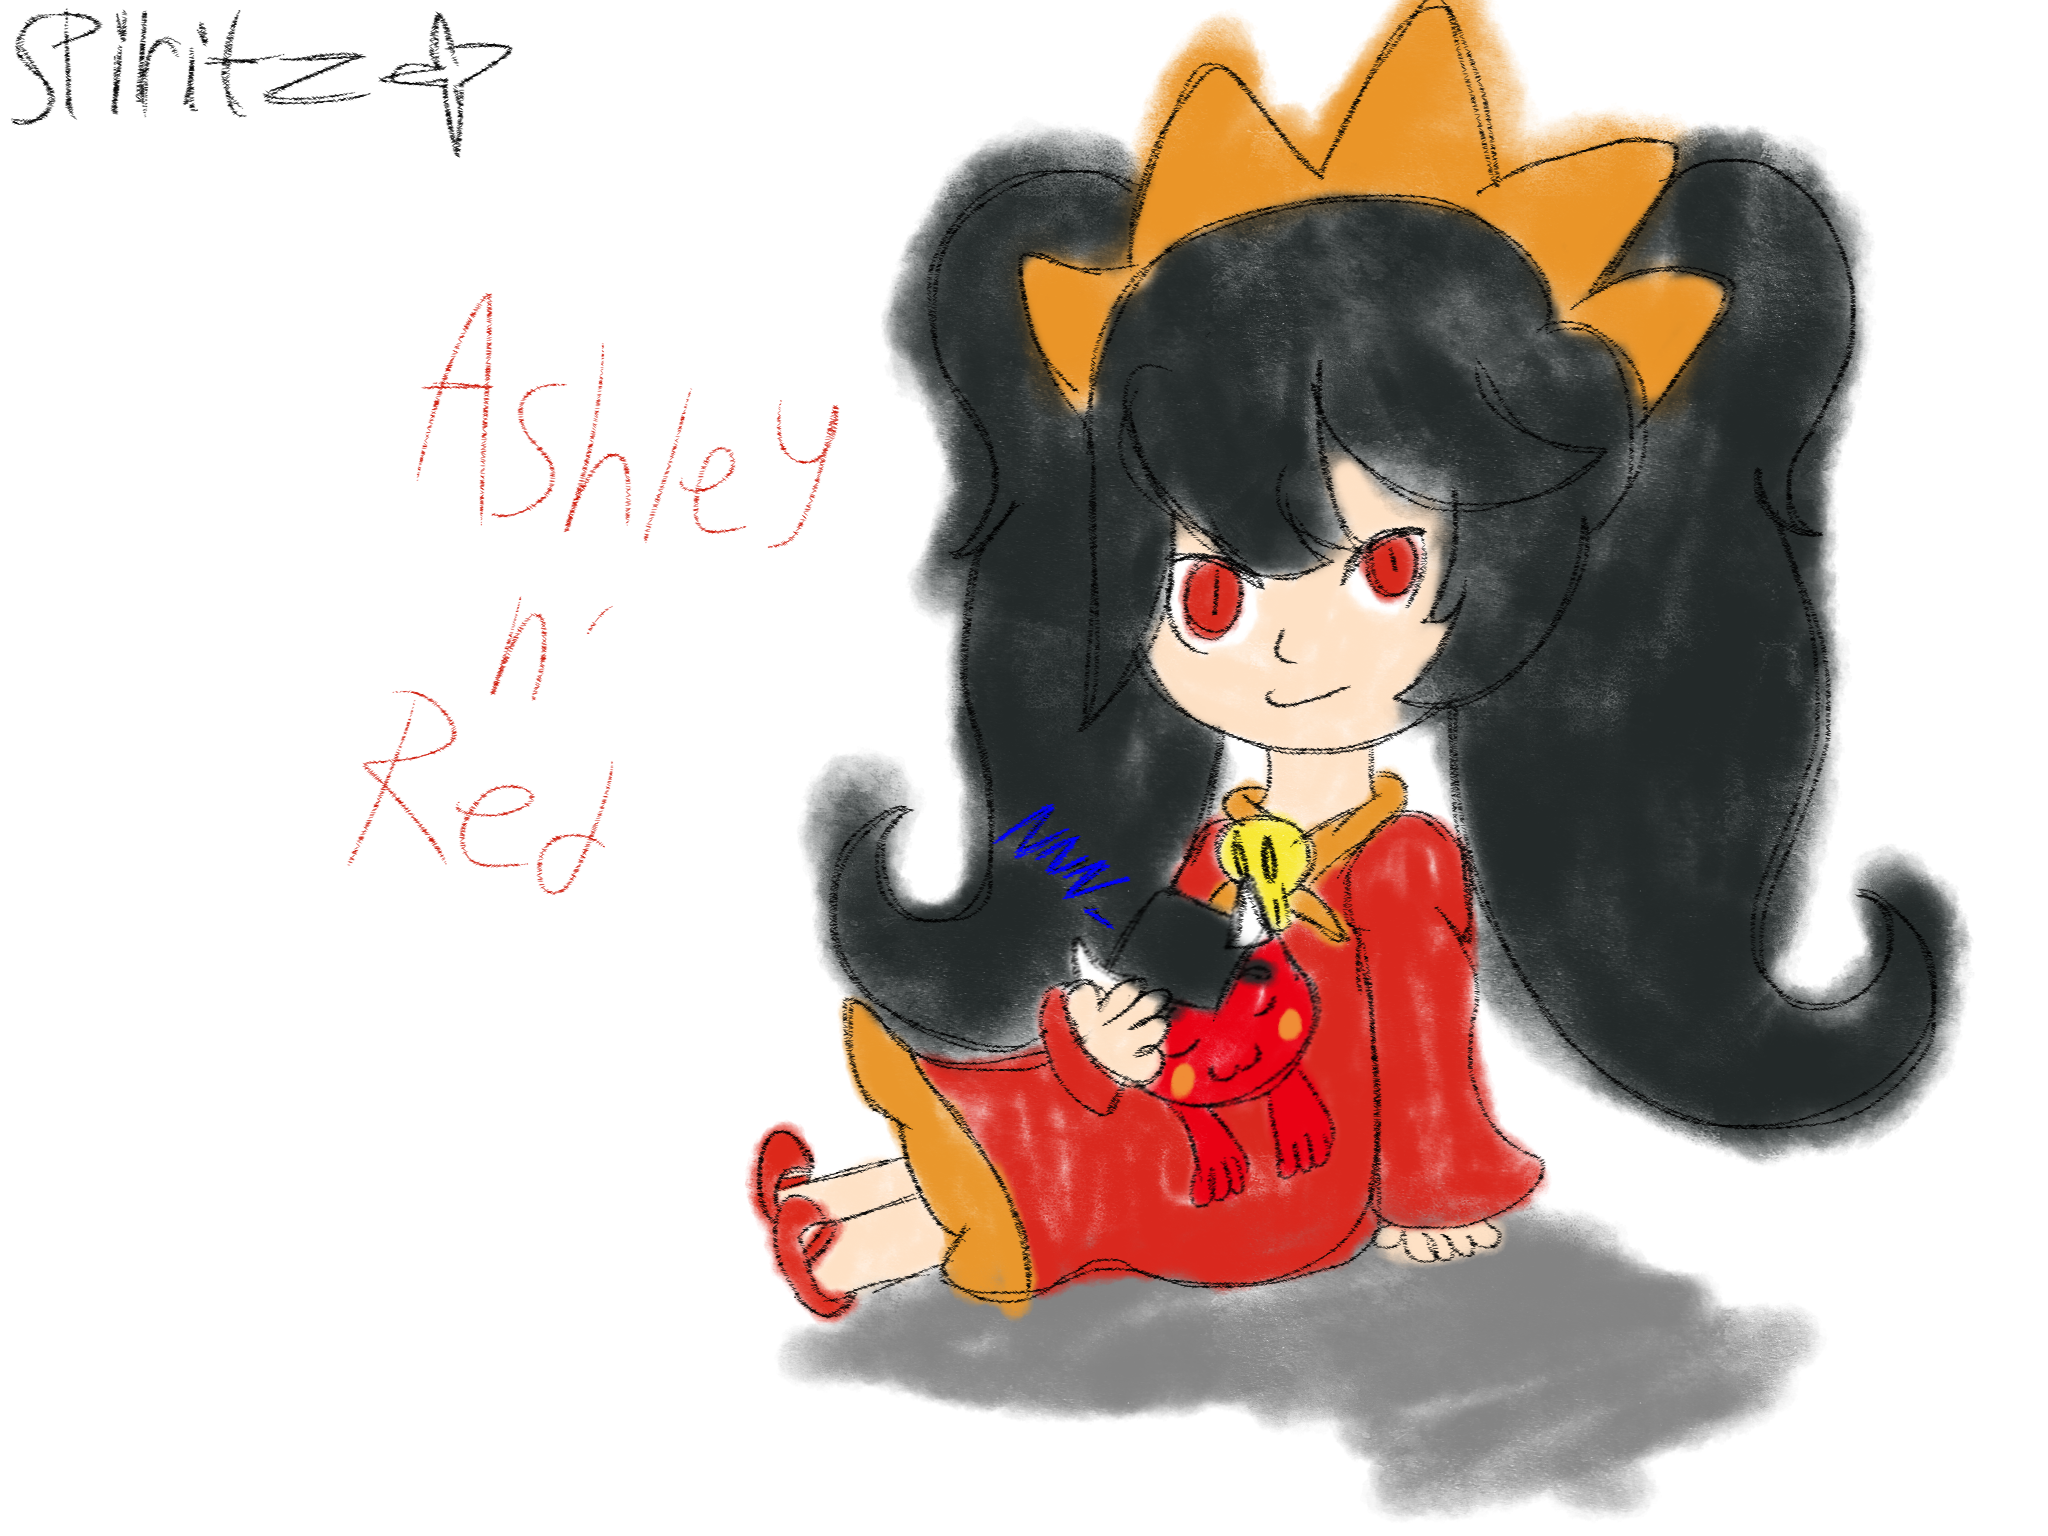 & red ashley Ashley: Name